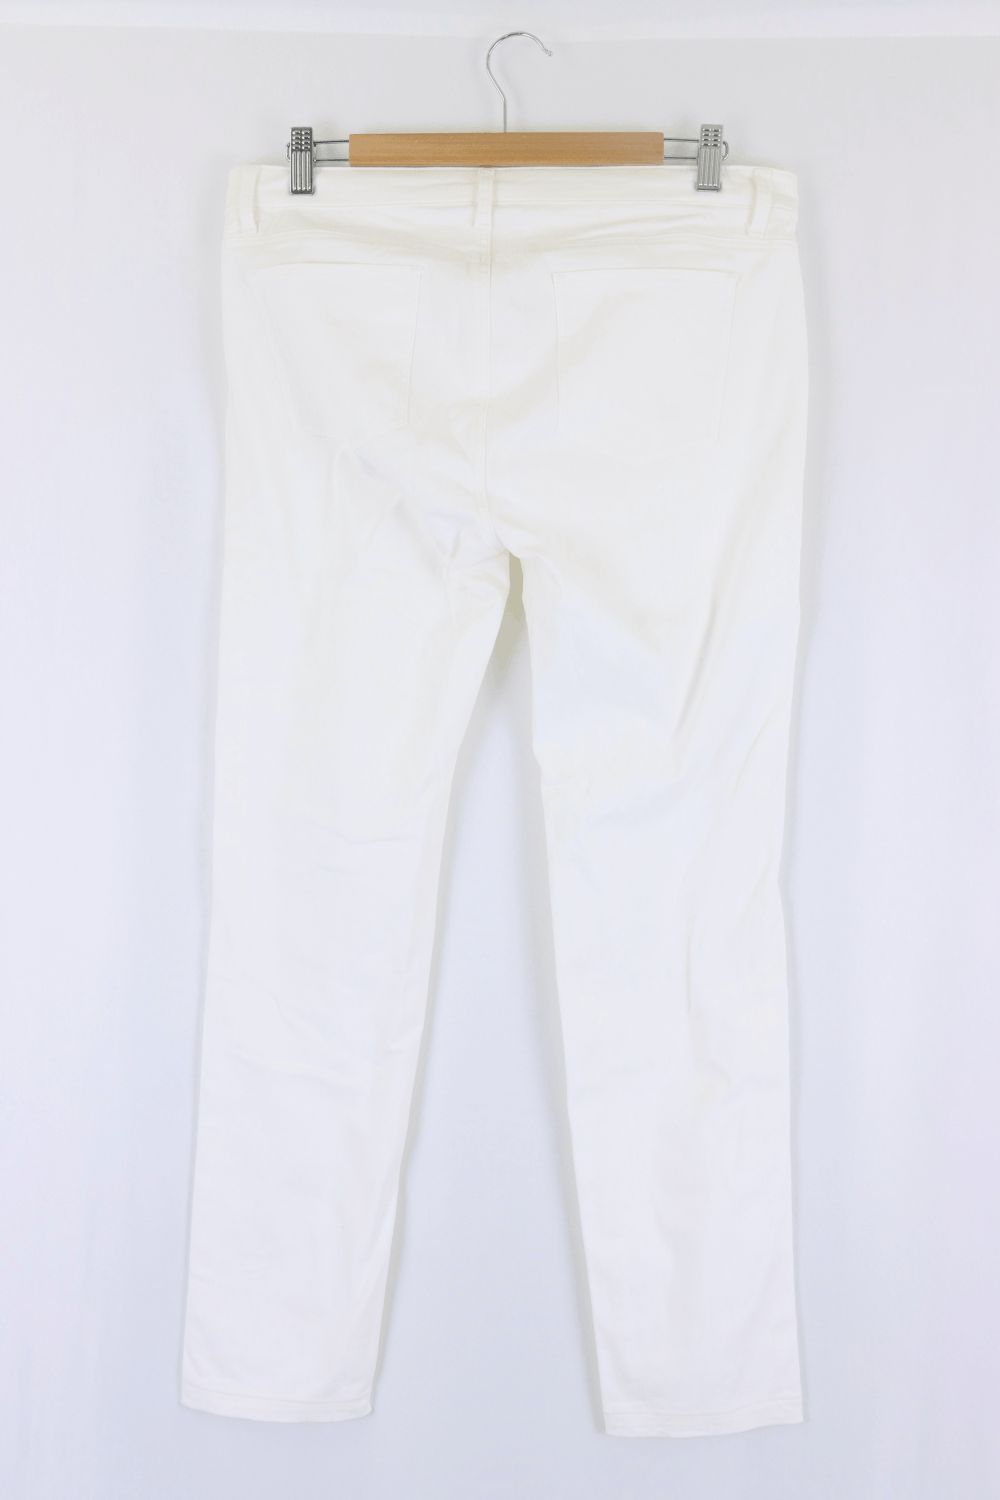 Uniqlo White Jeans M